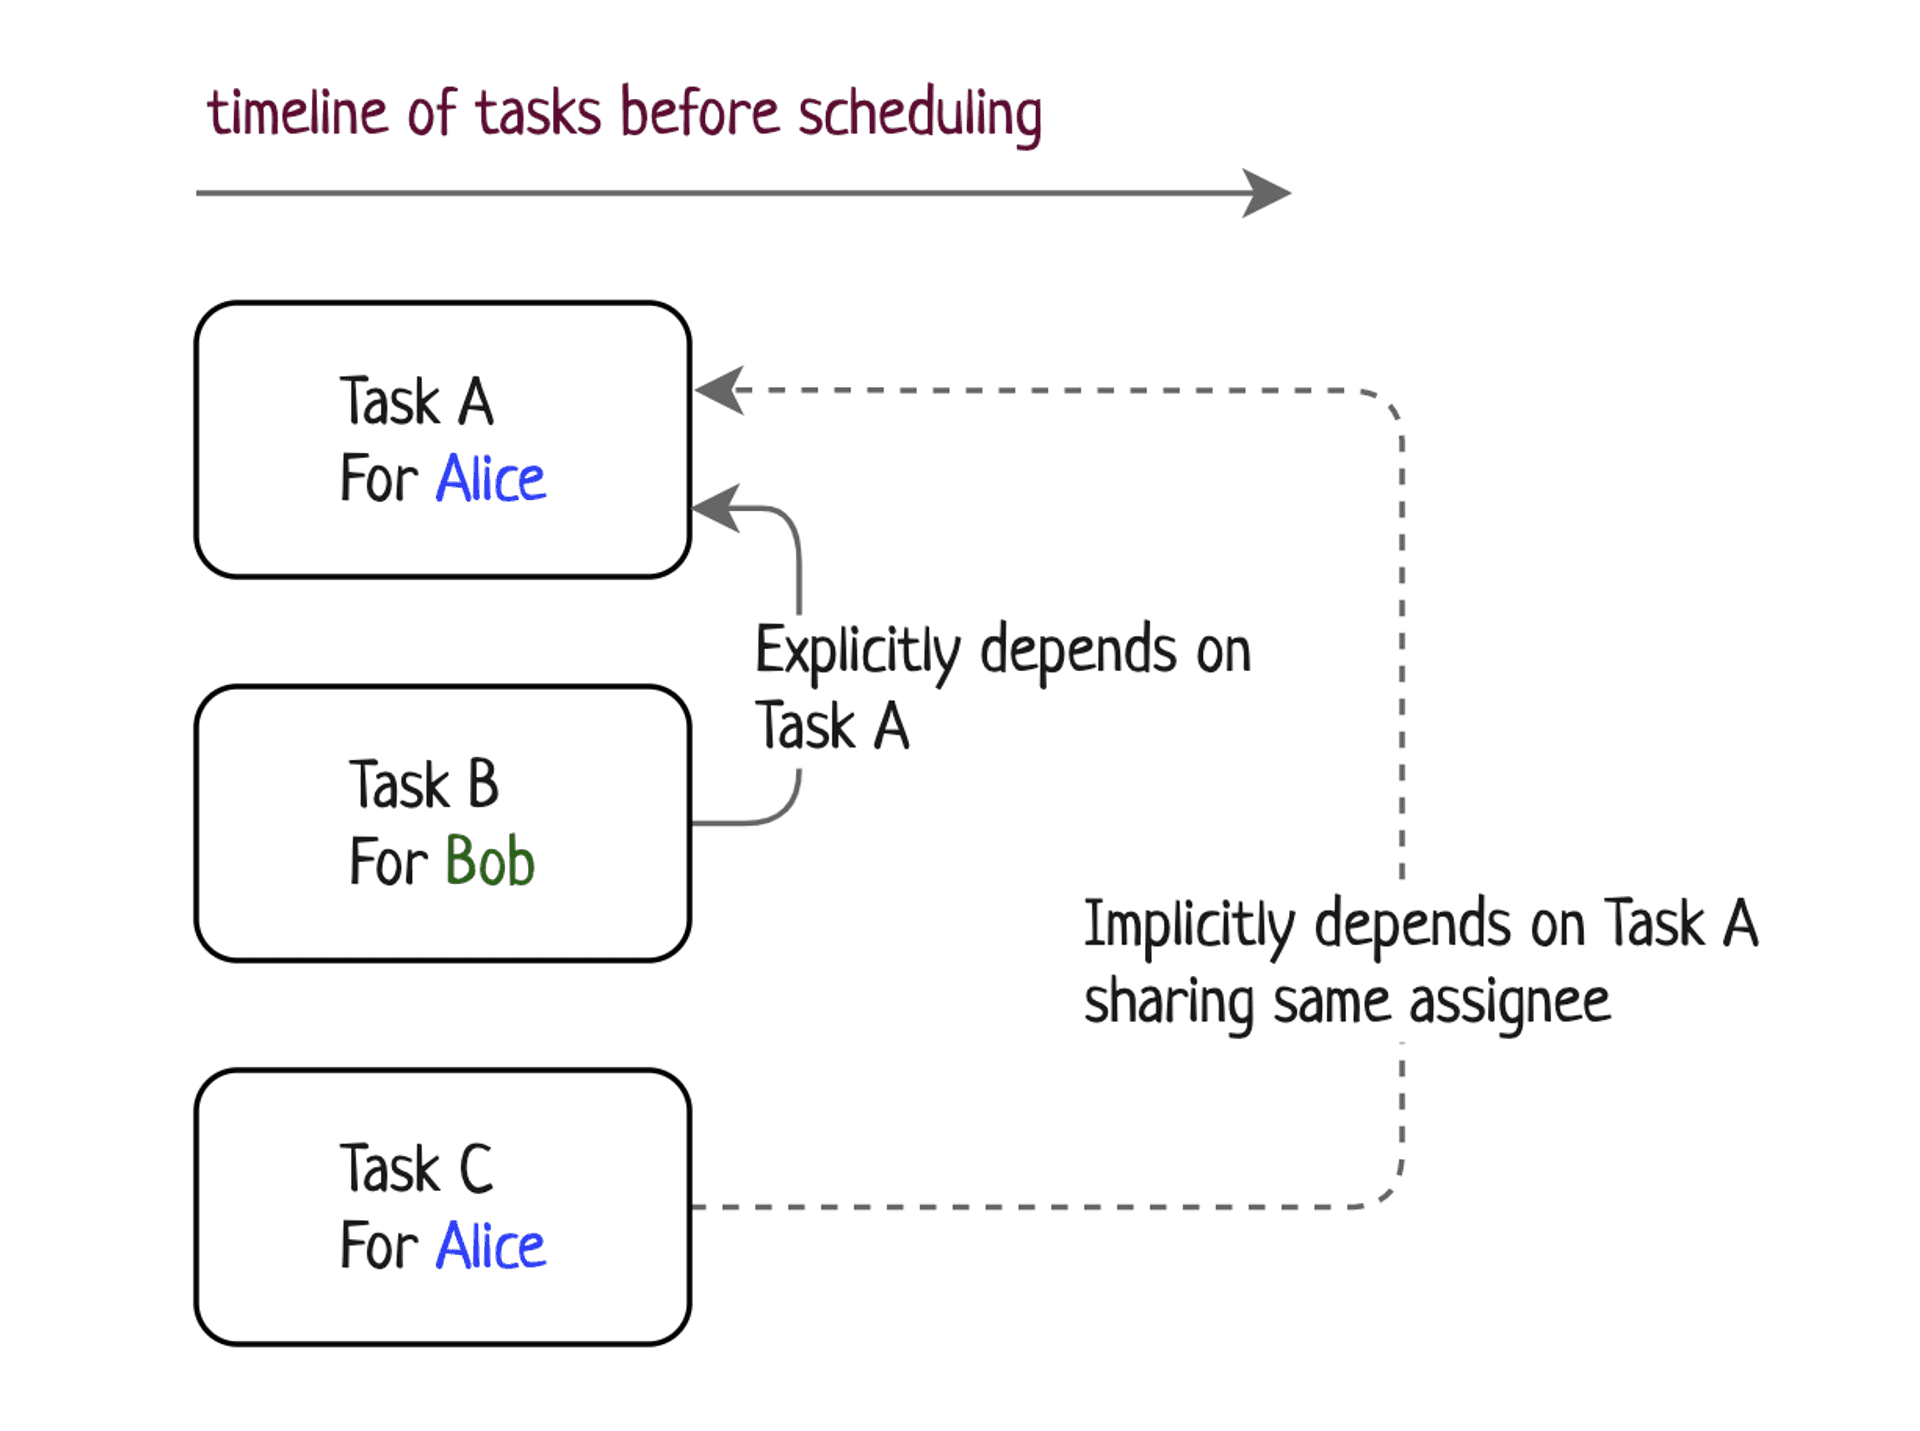 Timeline of tasks before scheduling